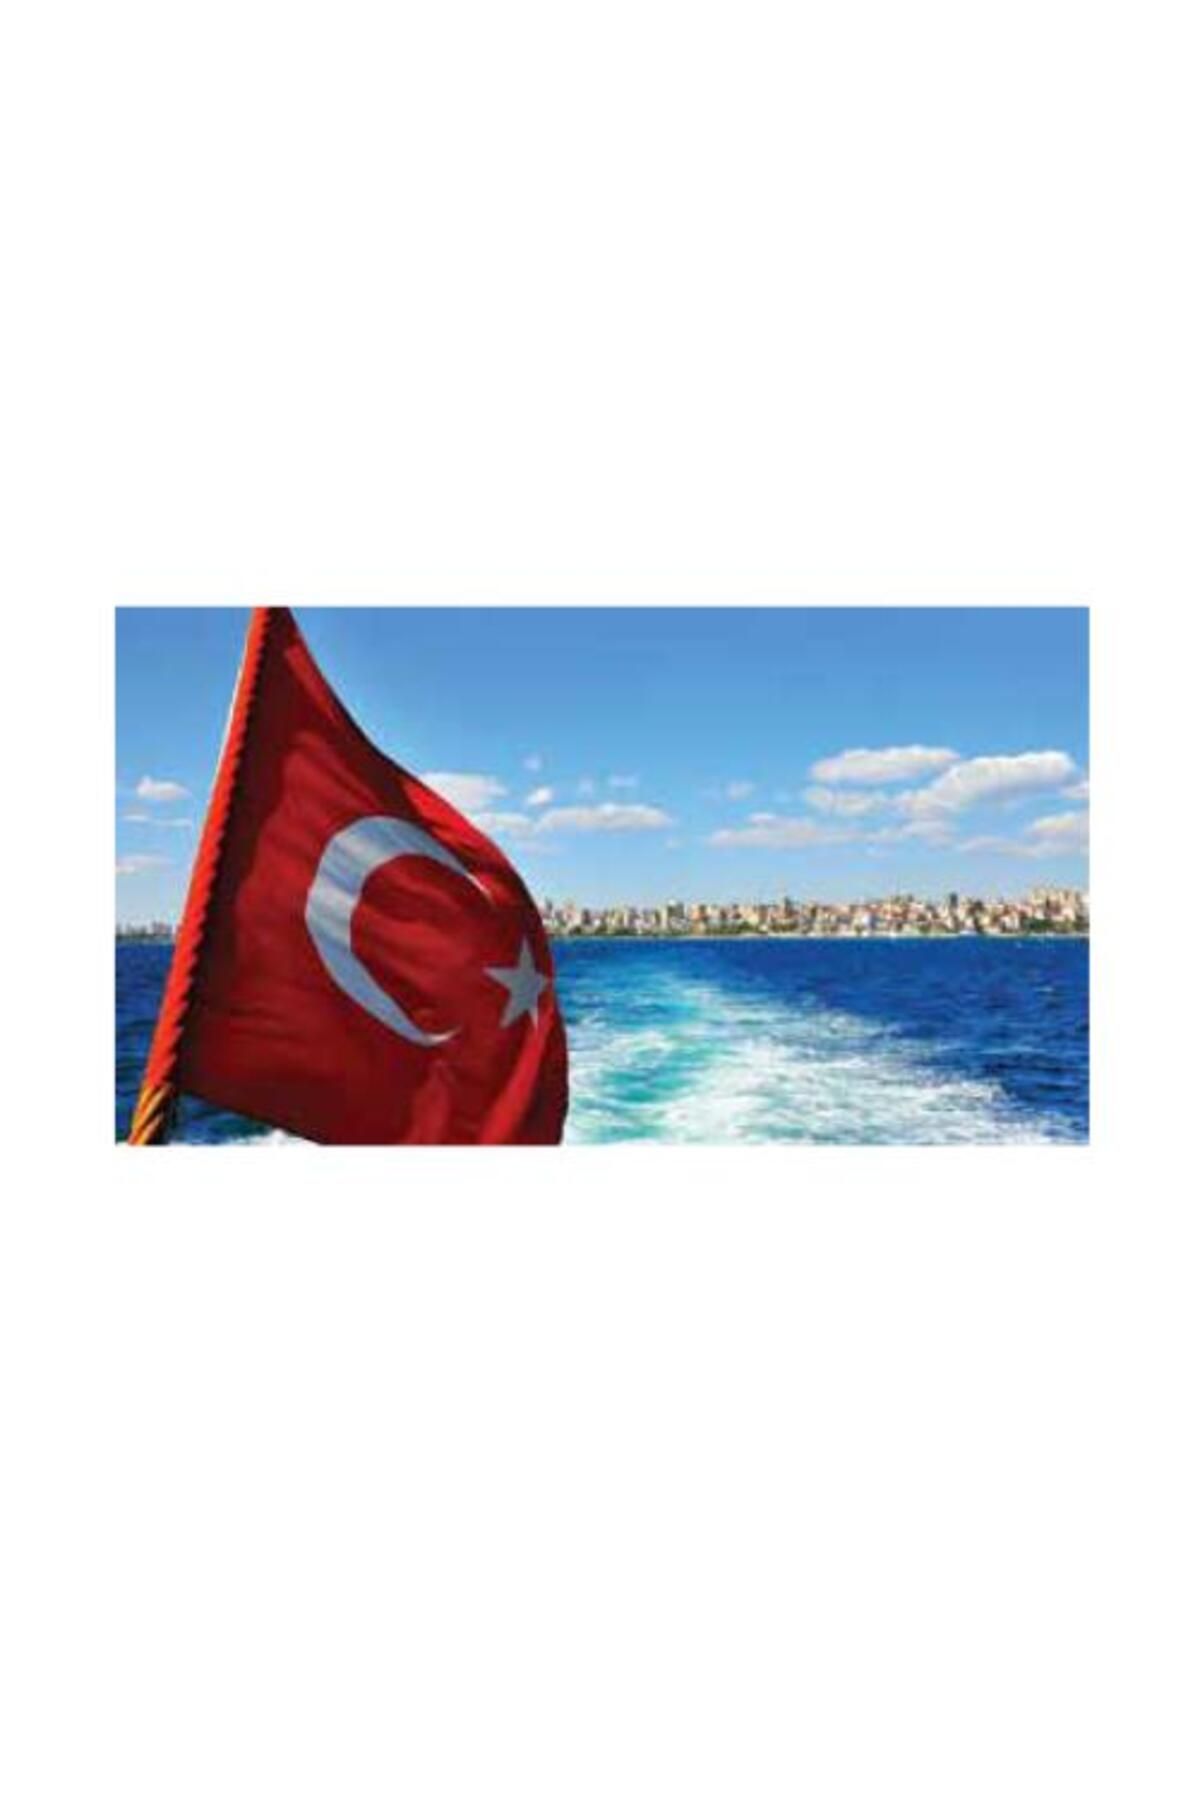 KALE Türk Bayrağı 200x300cm